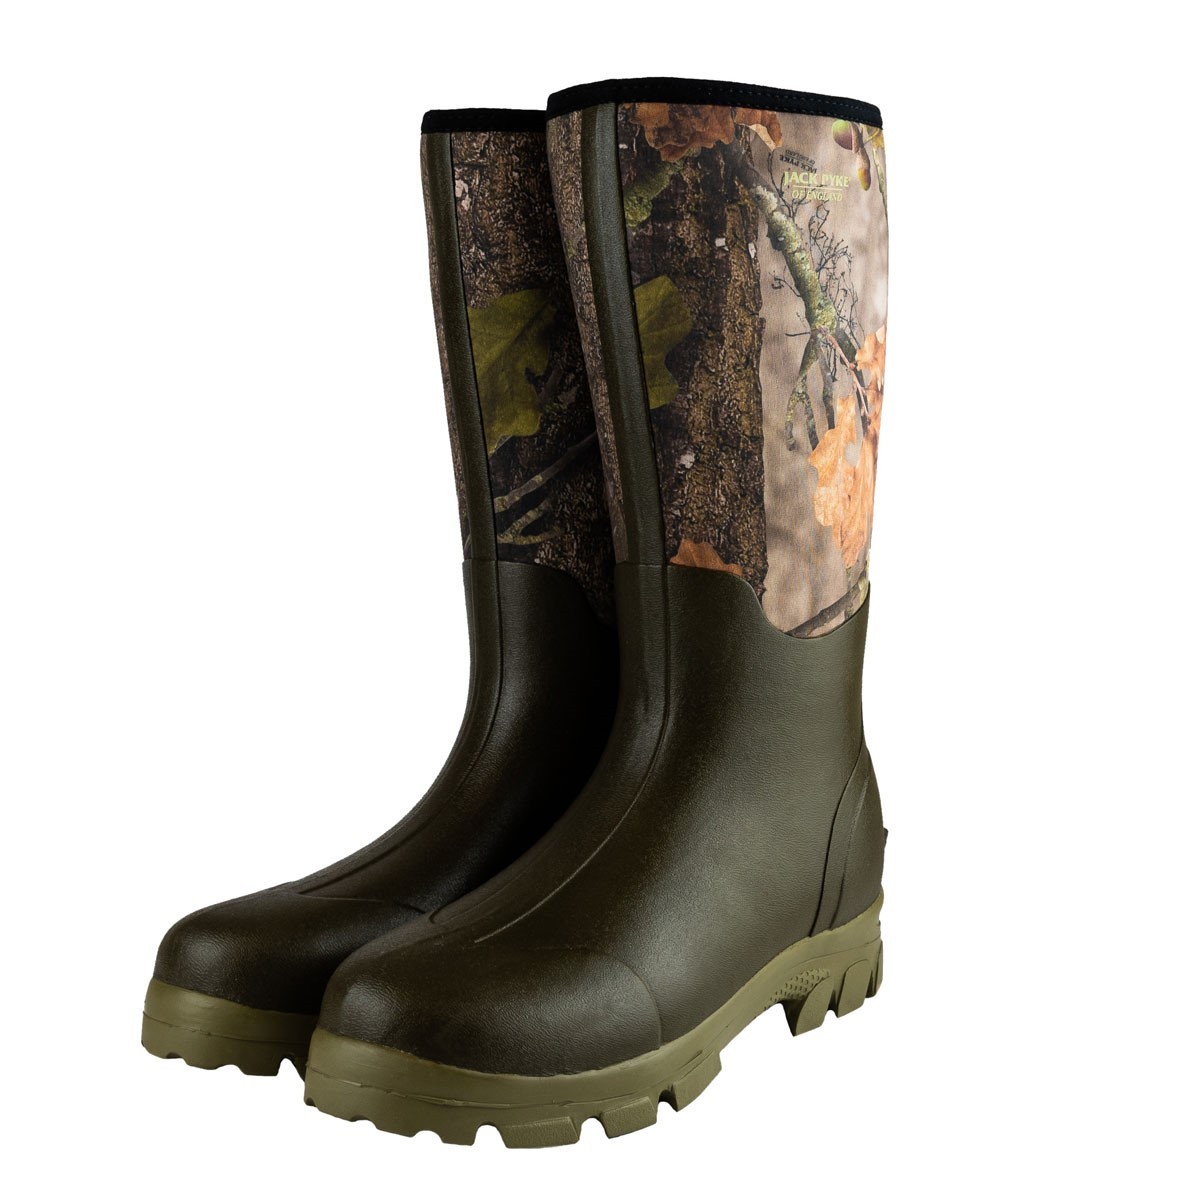 Jack Pyke Jack Pyke Waterproof Walking Hunting Boots Oak Camouflage Camo Insulated Tundra 